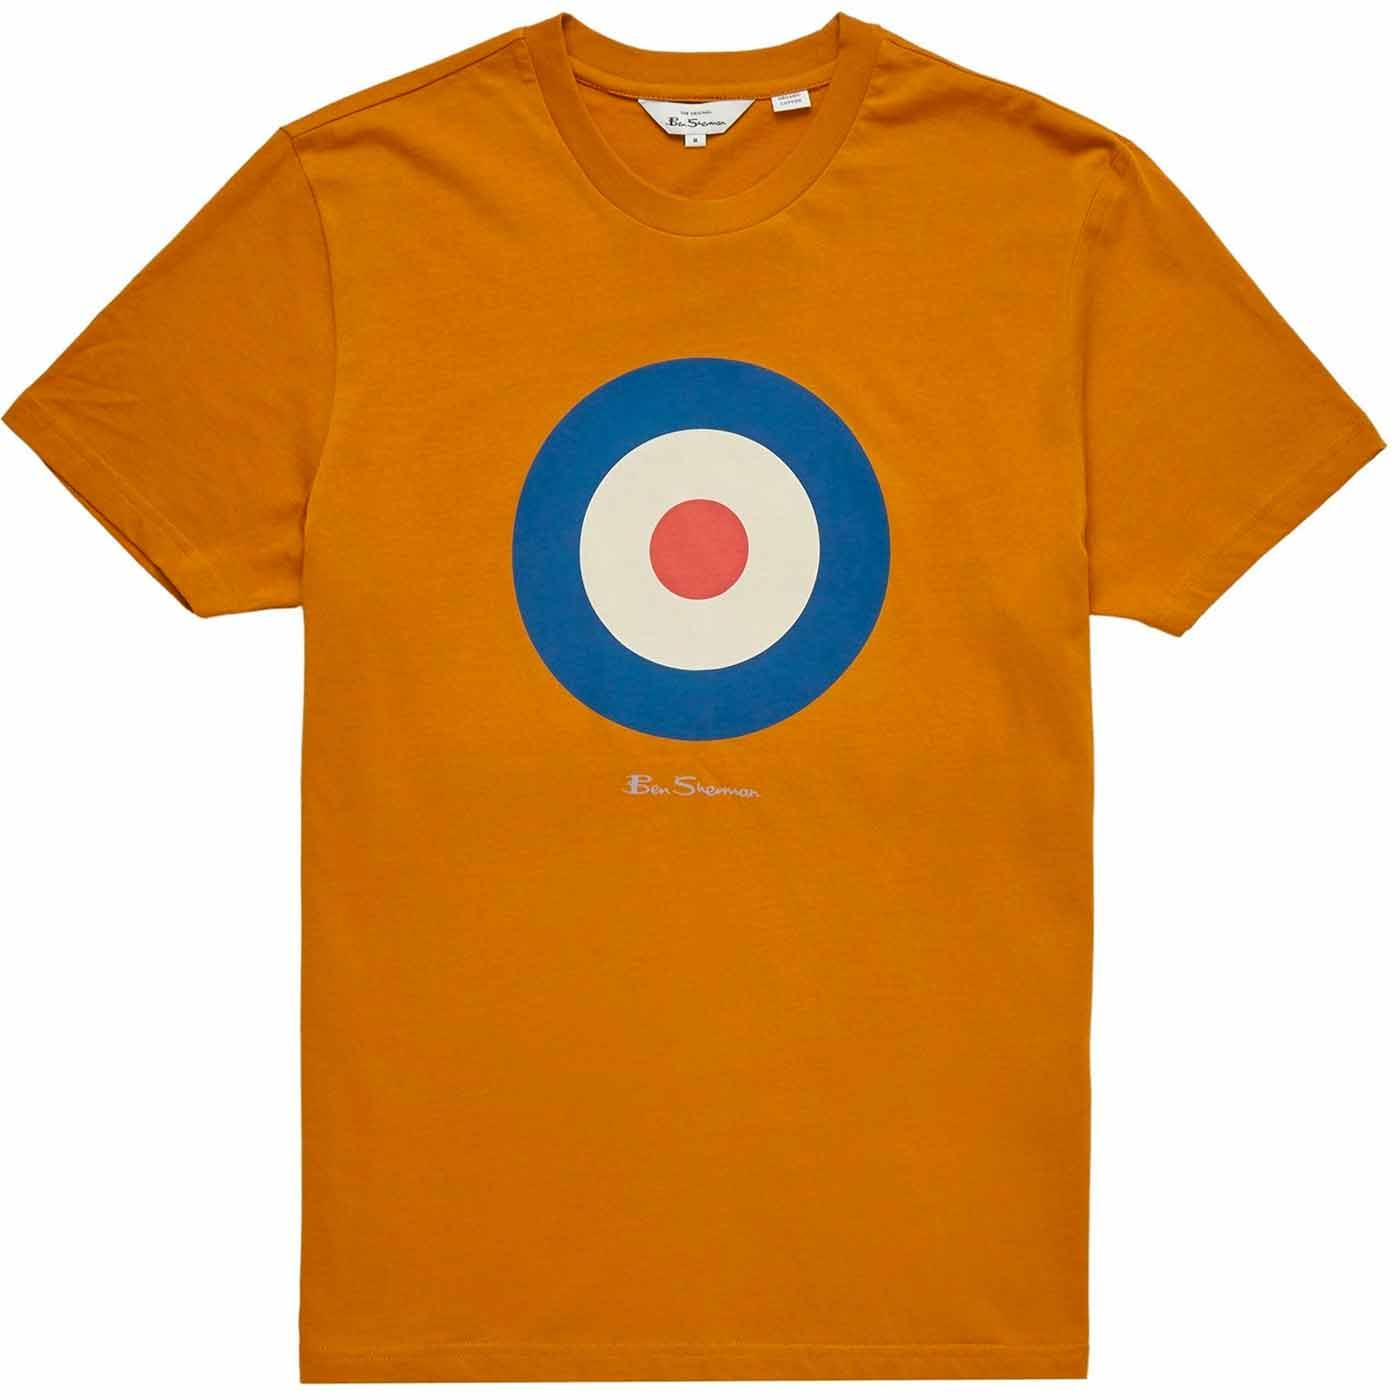 BEN SHERMAN Signature Mod Target T-shirt (Ochre)